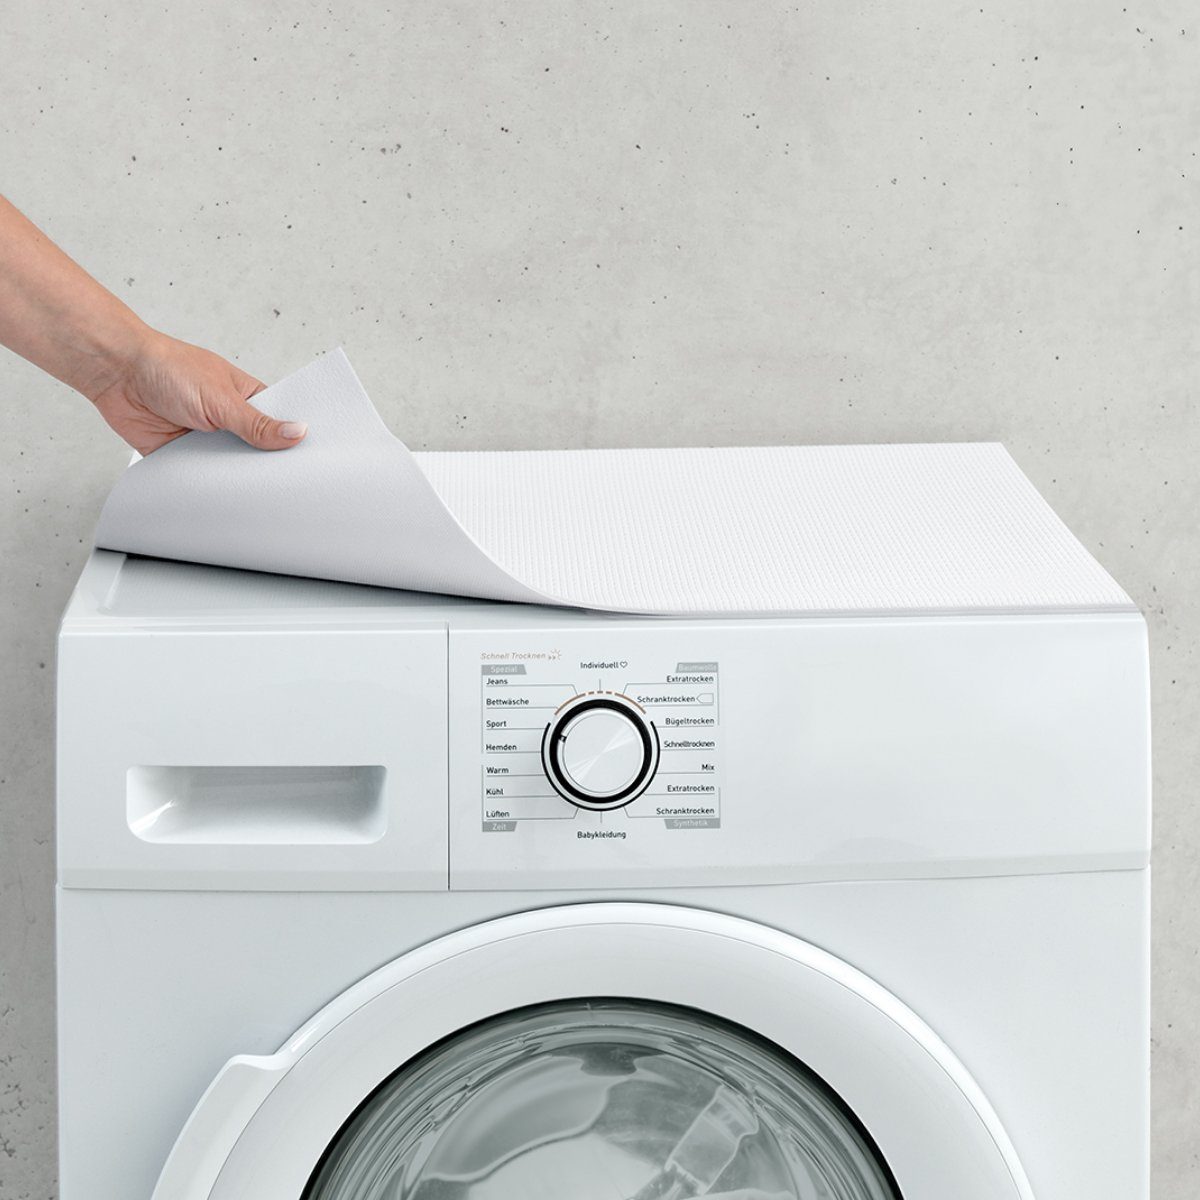 matches21 HOME & HOBBY Antirutschmatte Waschmaschinenauflage rutschfest zuschneidbar weiß 60 cm, Waschmaschinenabdeckung als Abdeckung für Waschmaschine und Trockner